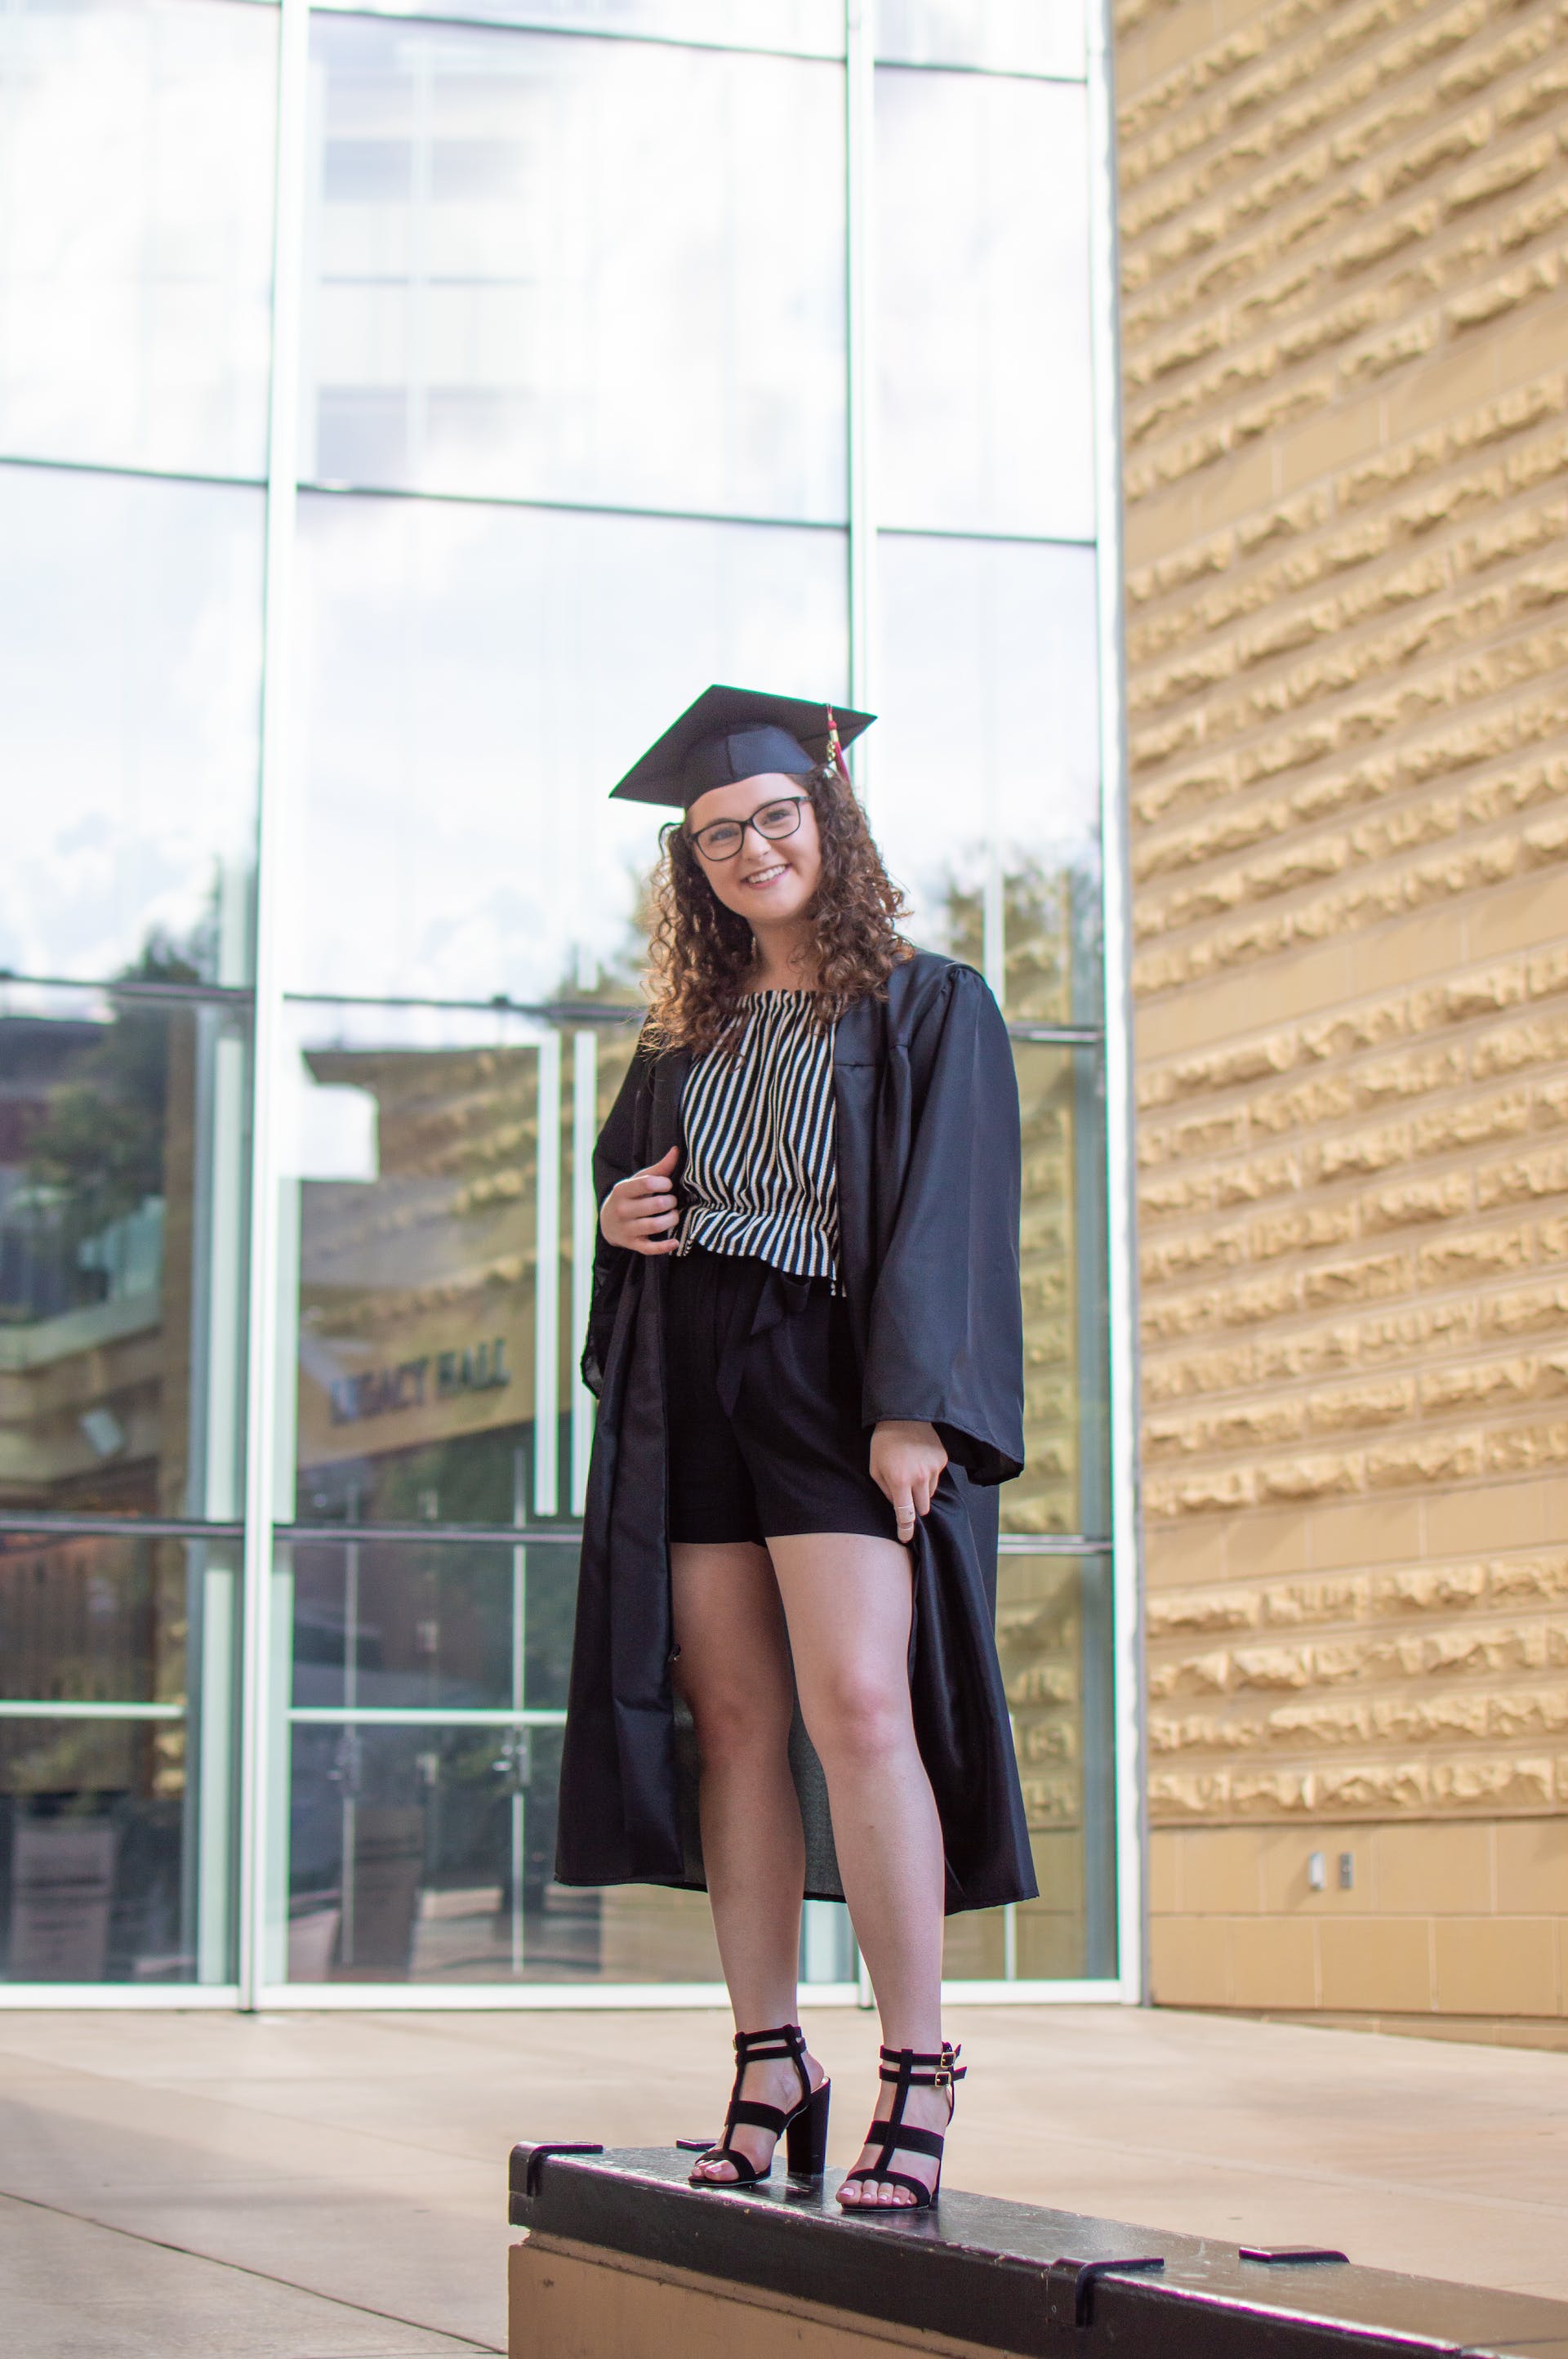 Une jeune femme en tenue de diplômée | Source : Pexels